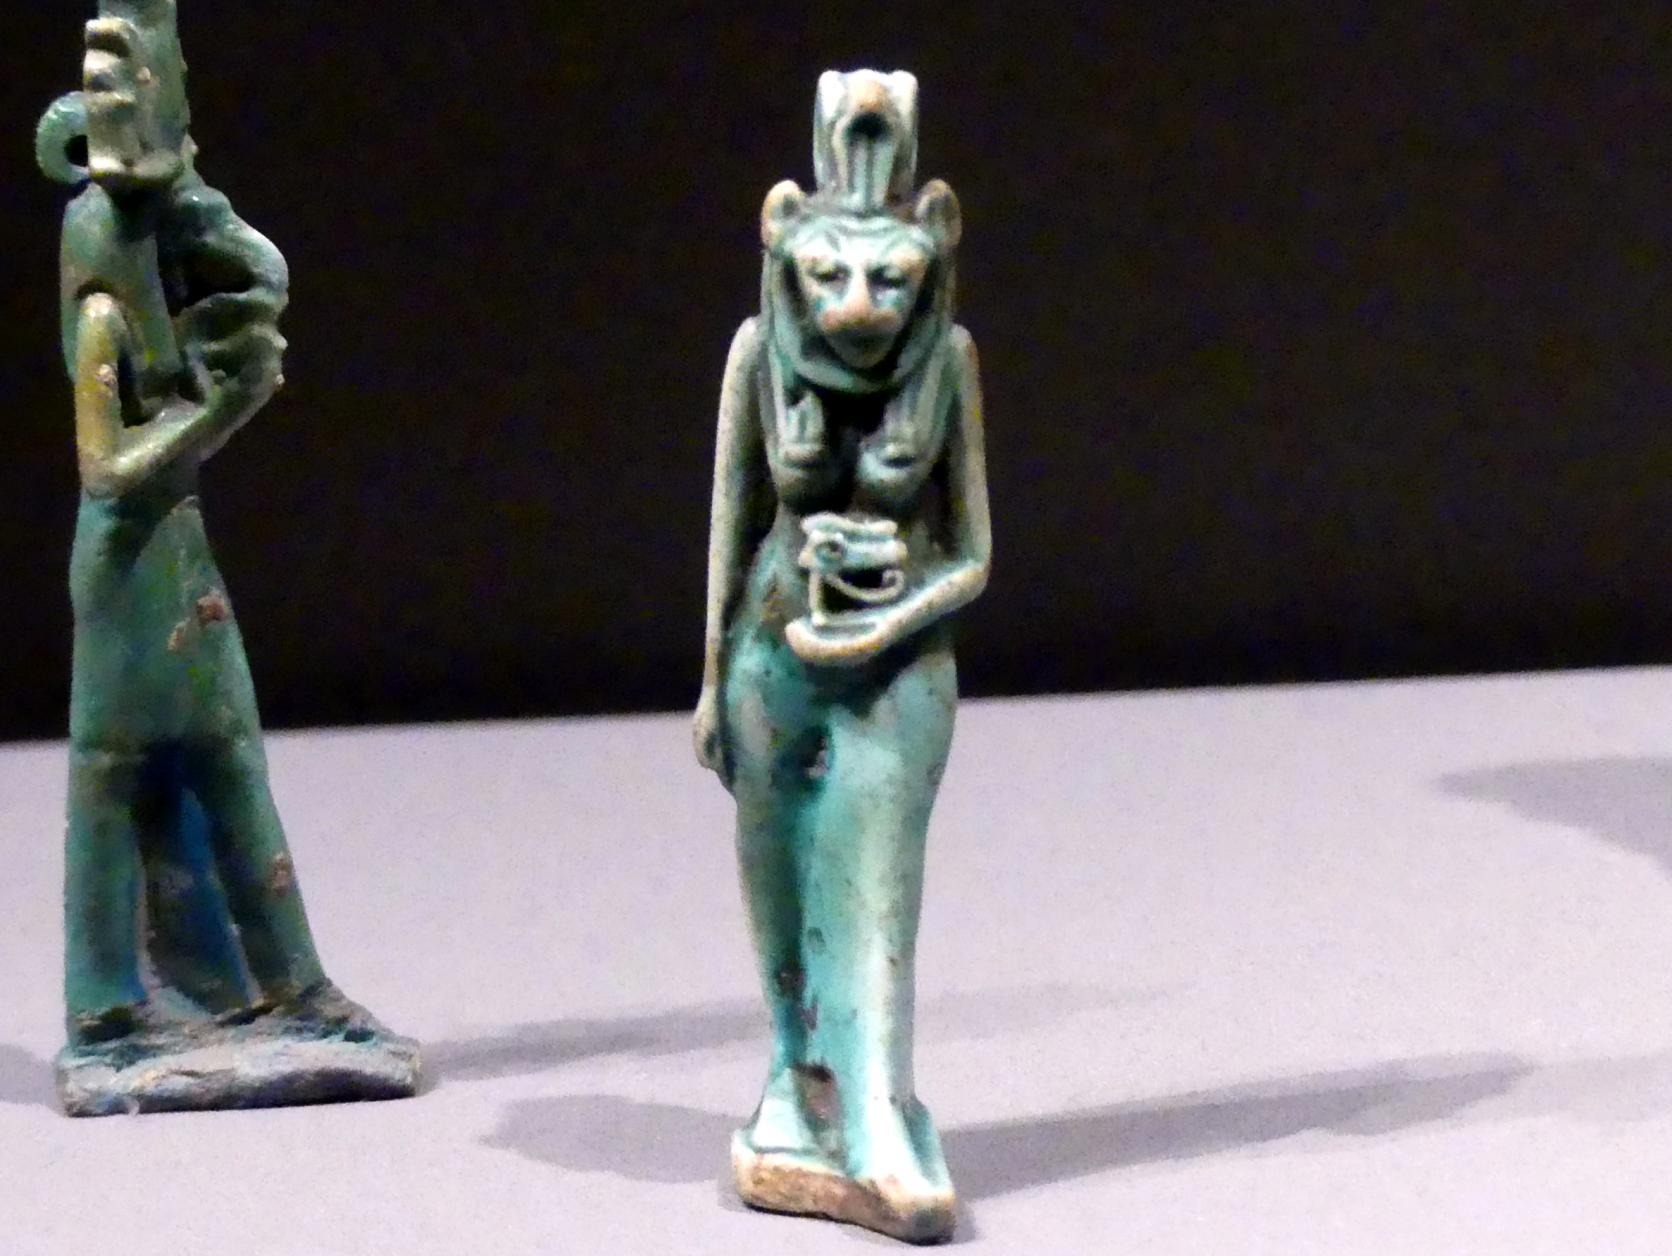 Standfigur der Sachmet, das geheilte Horusauge (Udjat) tragend, 1000 - 500 v. Chr., Bild 1/3